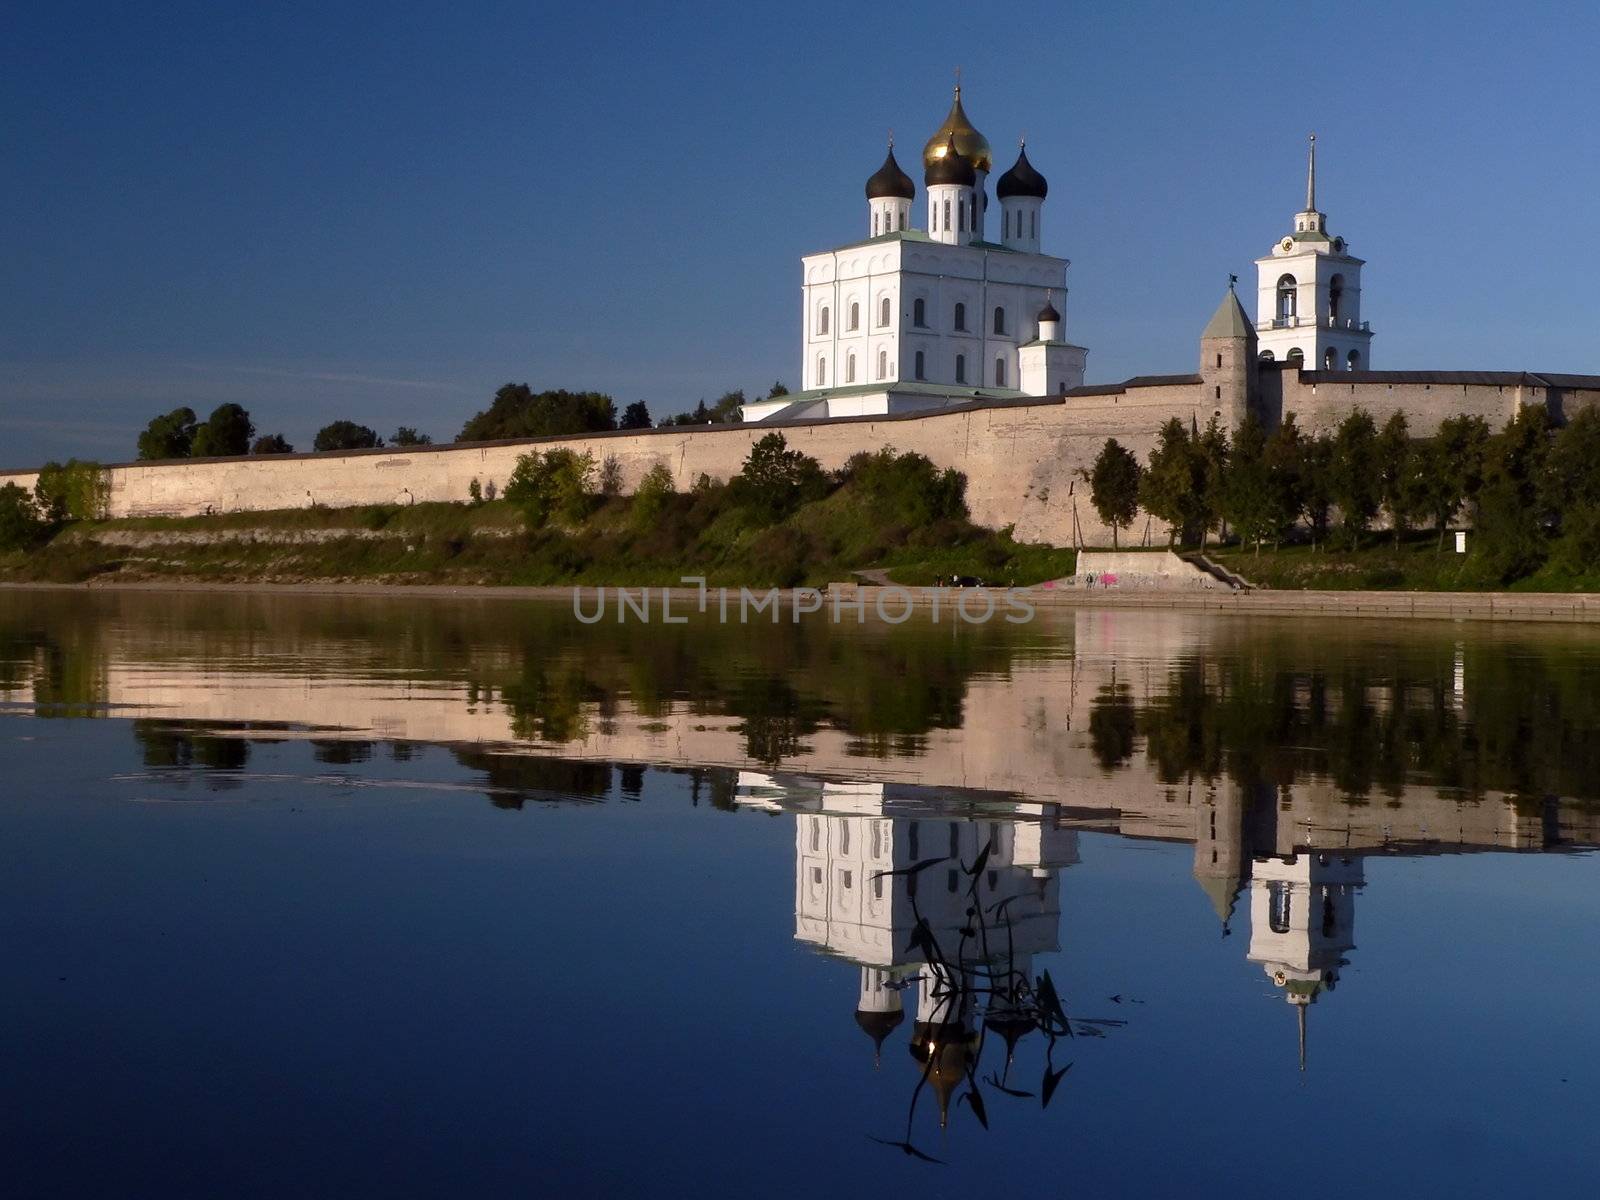 Kremlin of Pskov on Velikaya river. Russia.